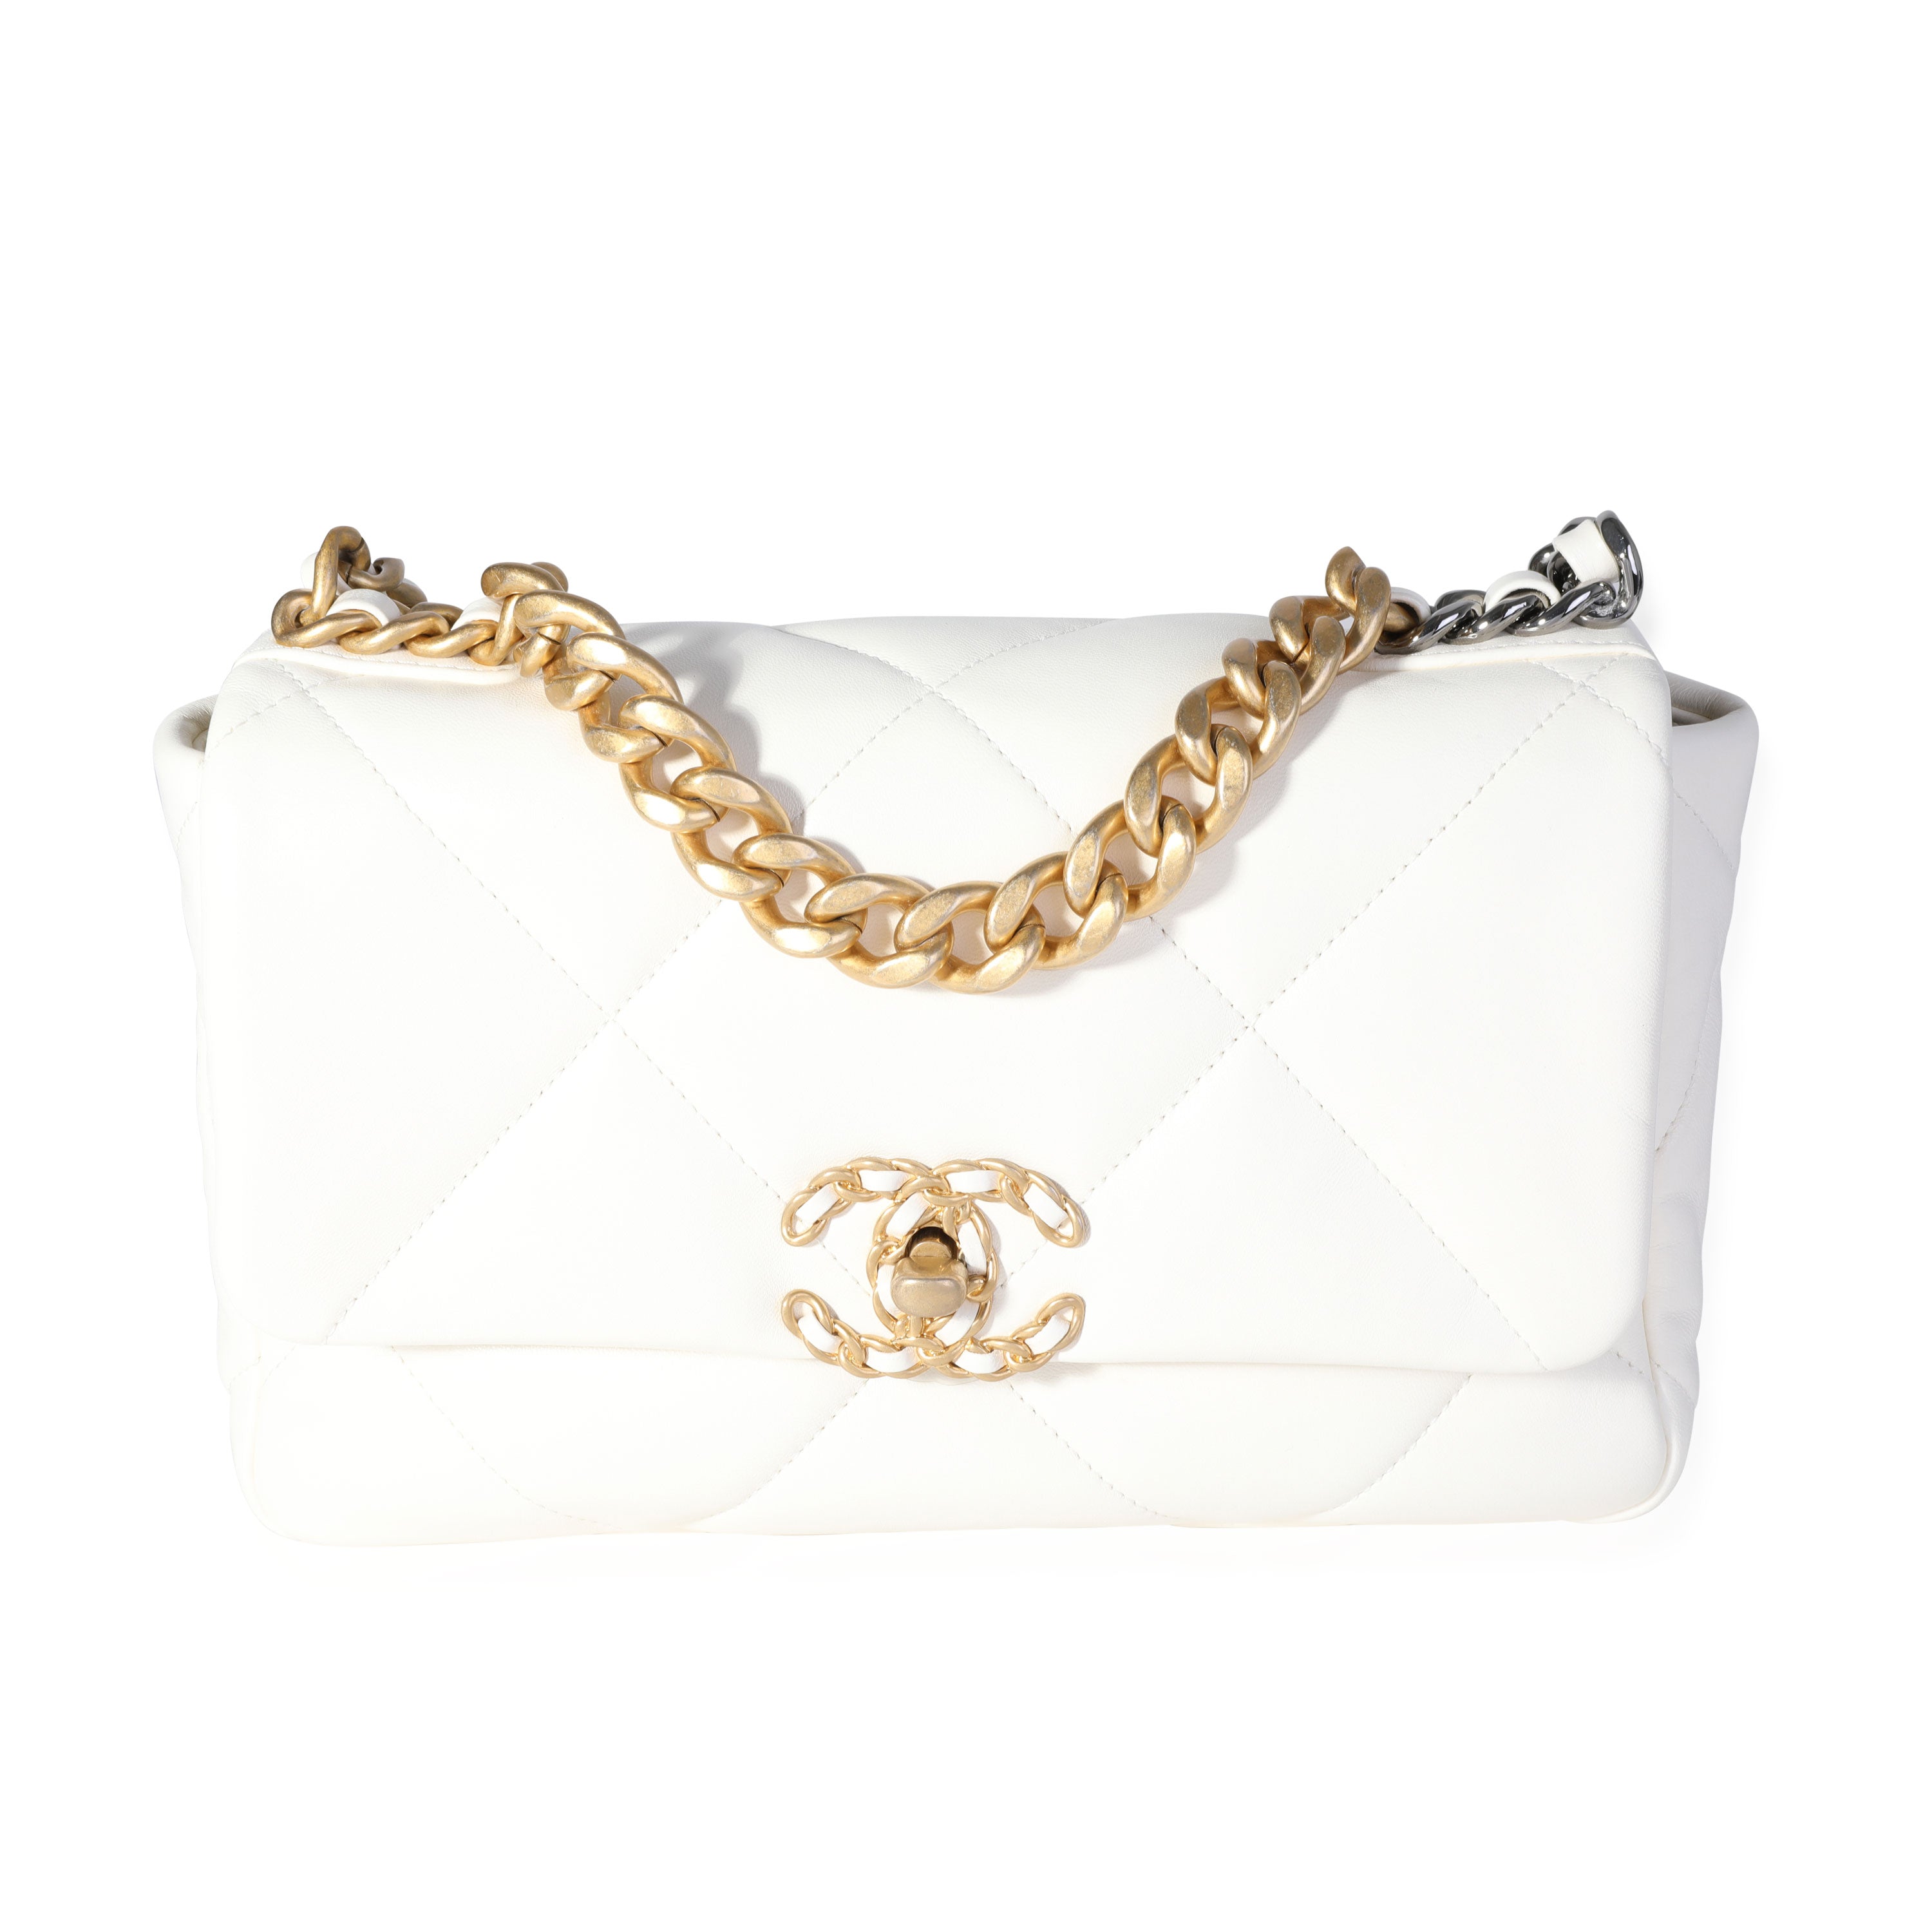 Chanel Beige Quilted Lambskin Medium Chanel 19 Flap Bag, myGemma, AU